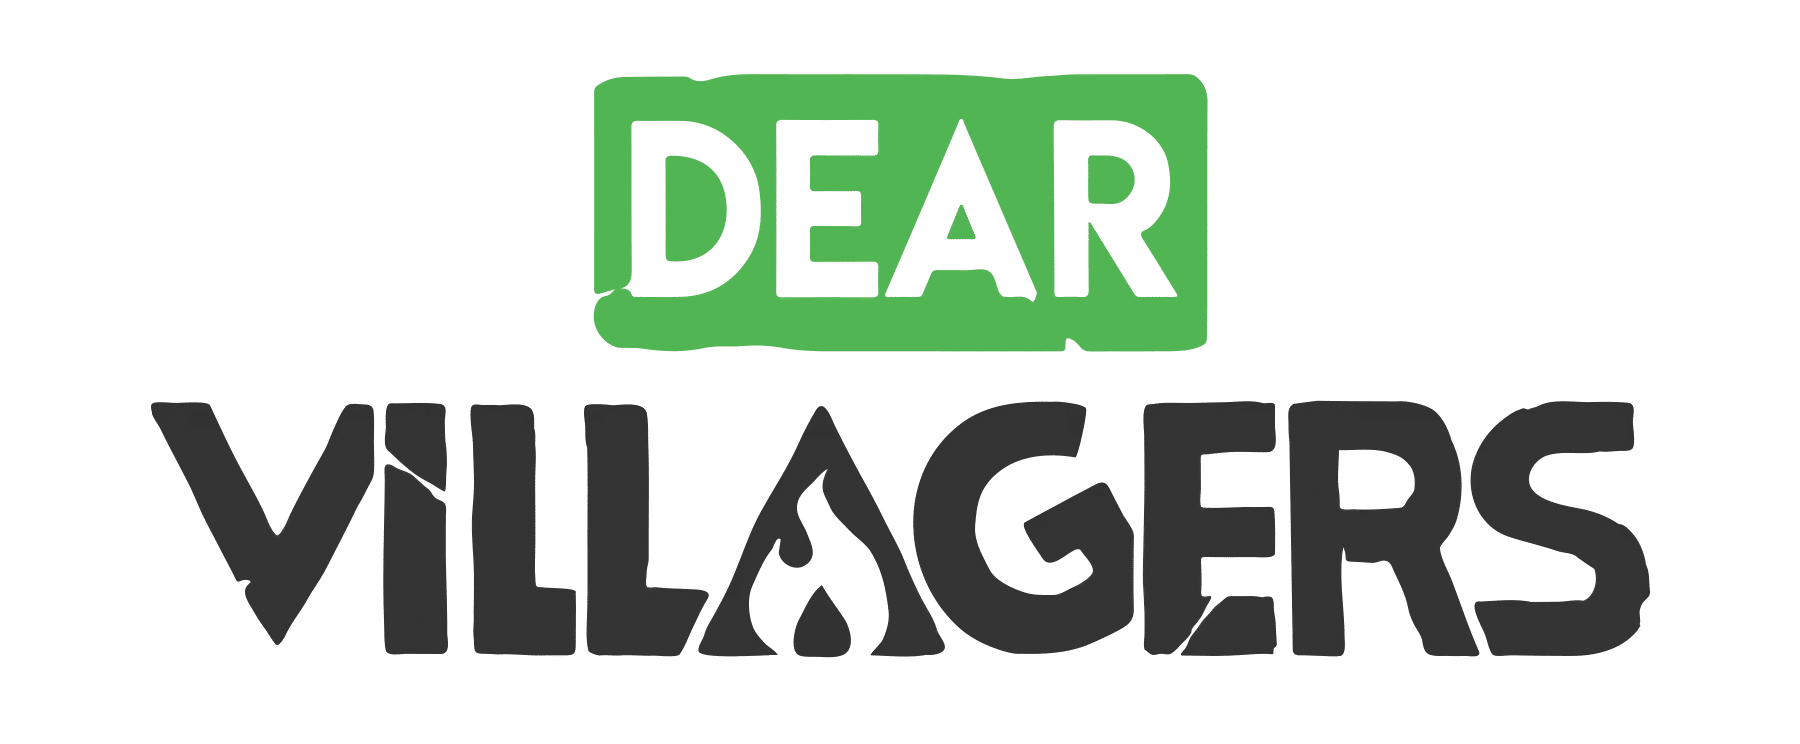 Dear villagers logo